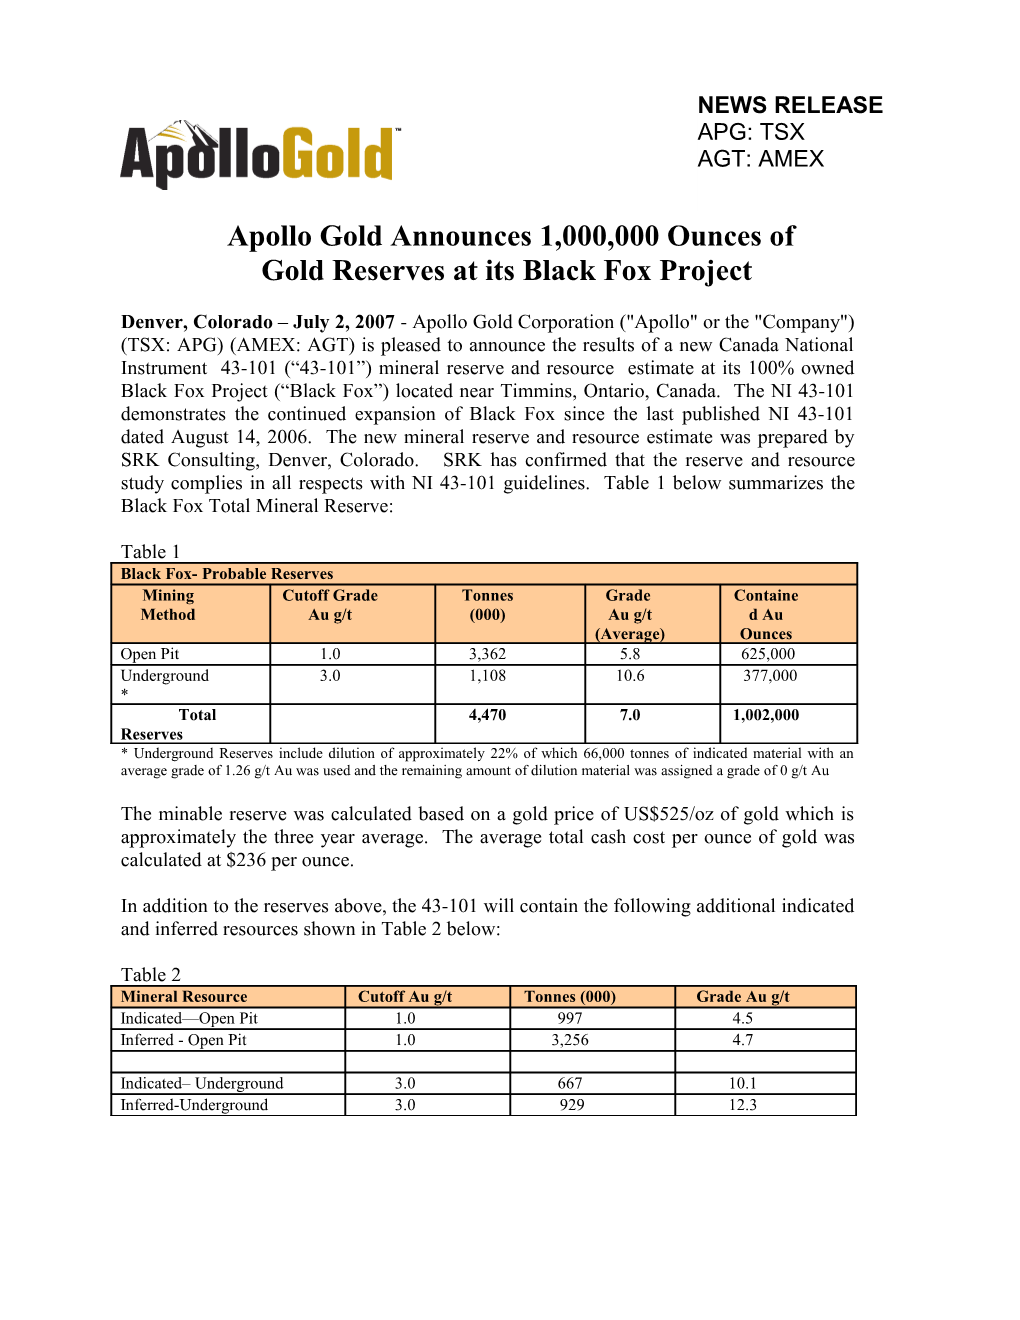 Apollo Gold Announces 1,000,000 Ounces Of